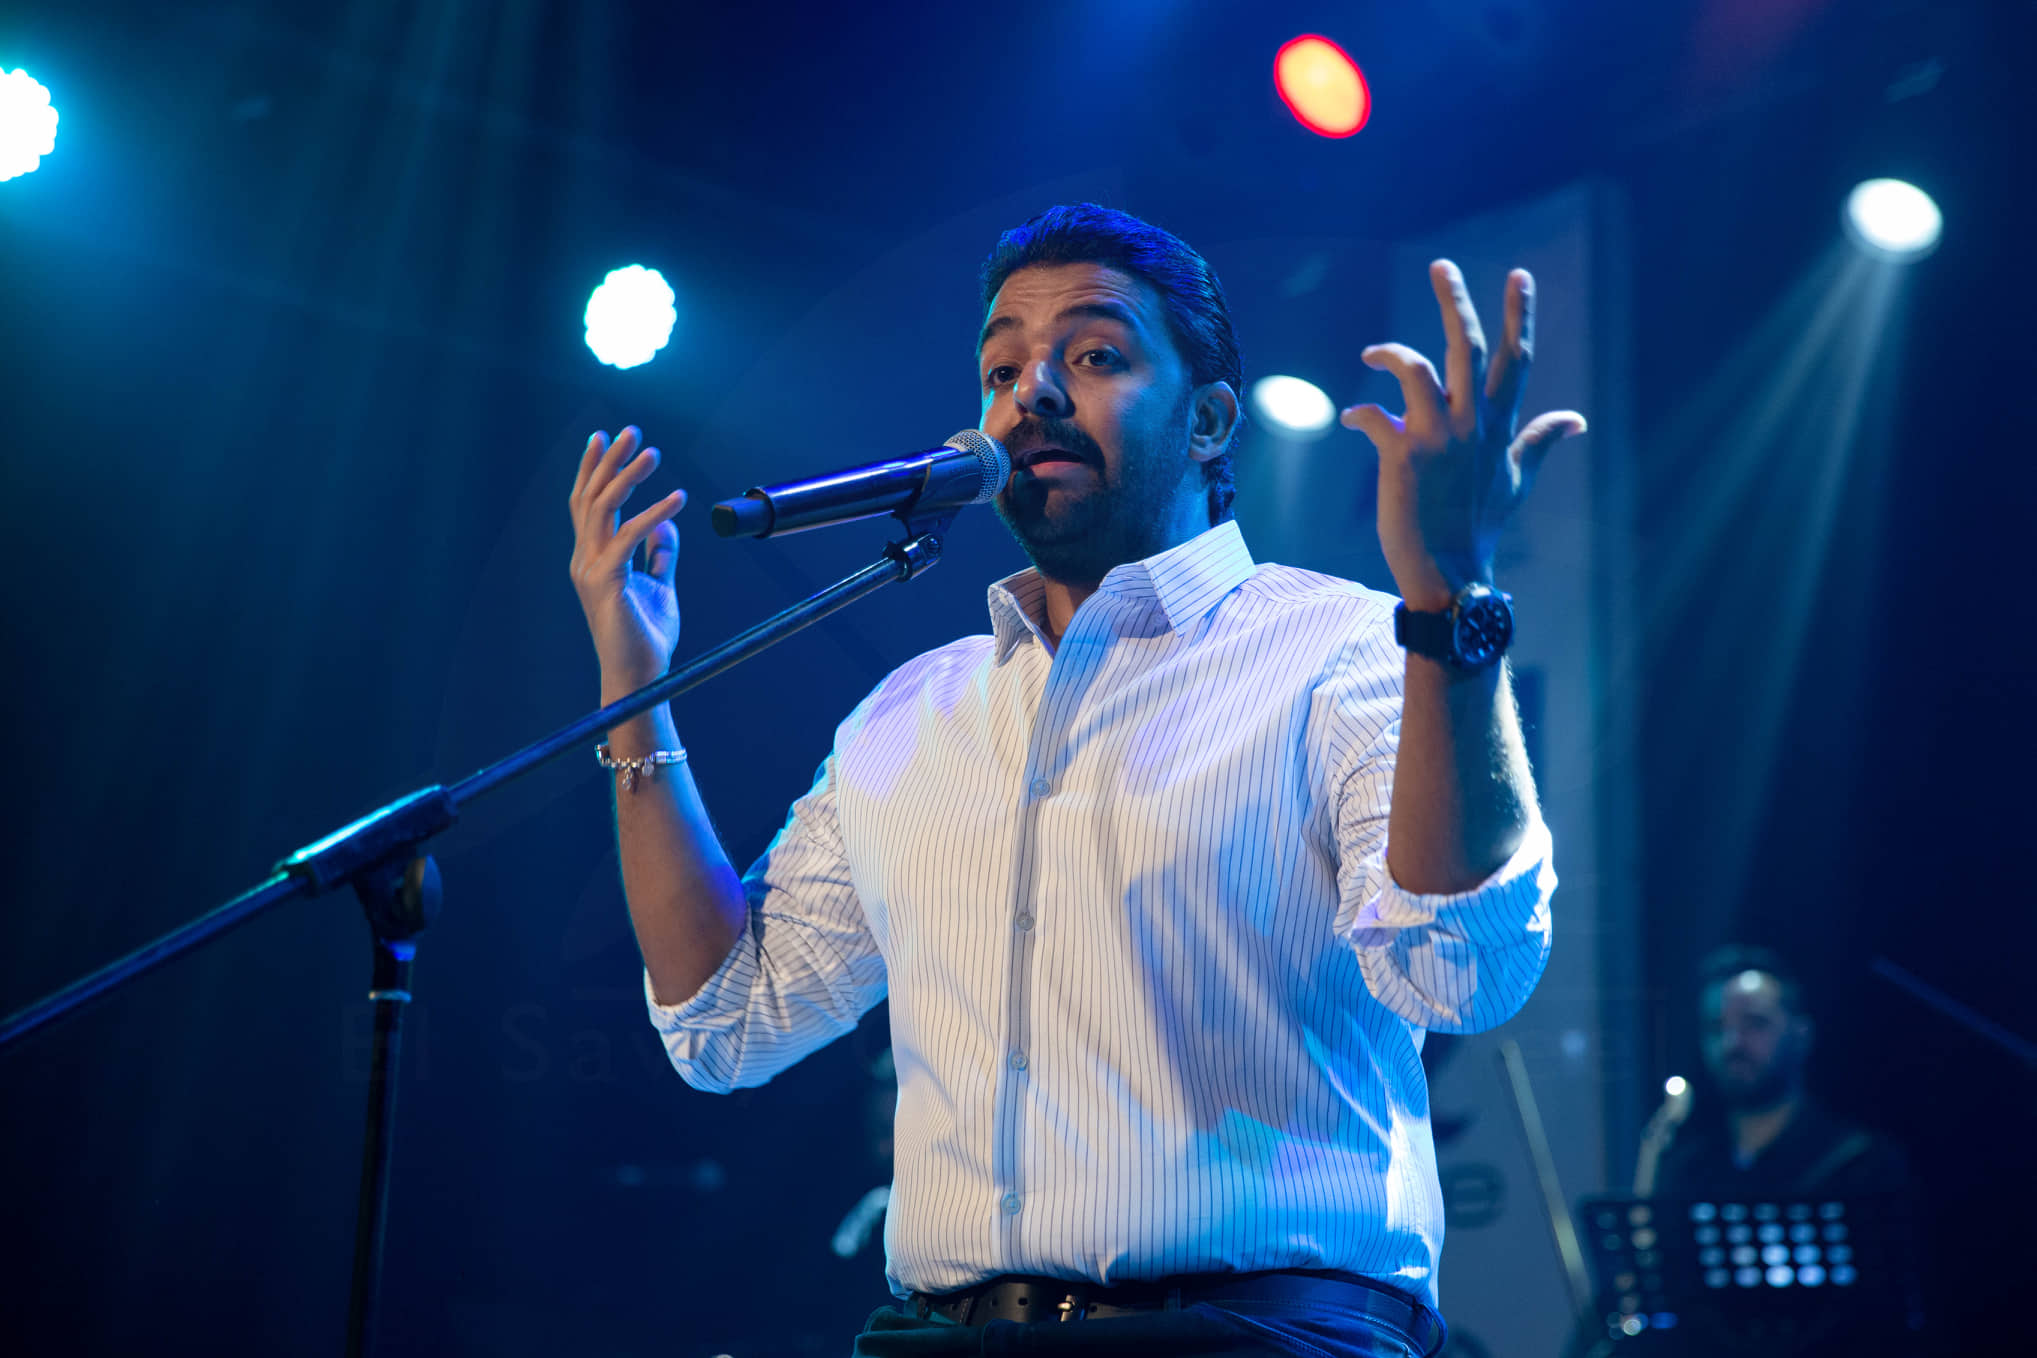  الشاعر عمرو حسن في حفل ساقية عبدالمنعم الصاوى